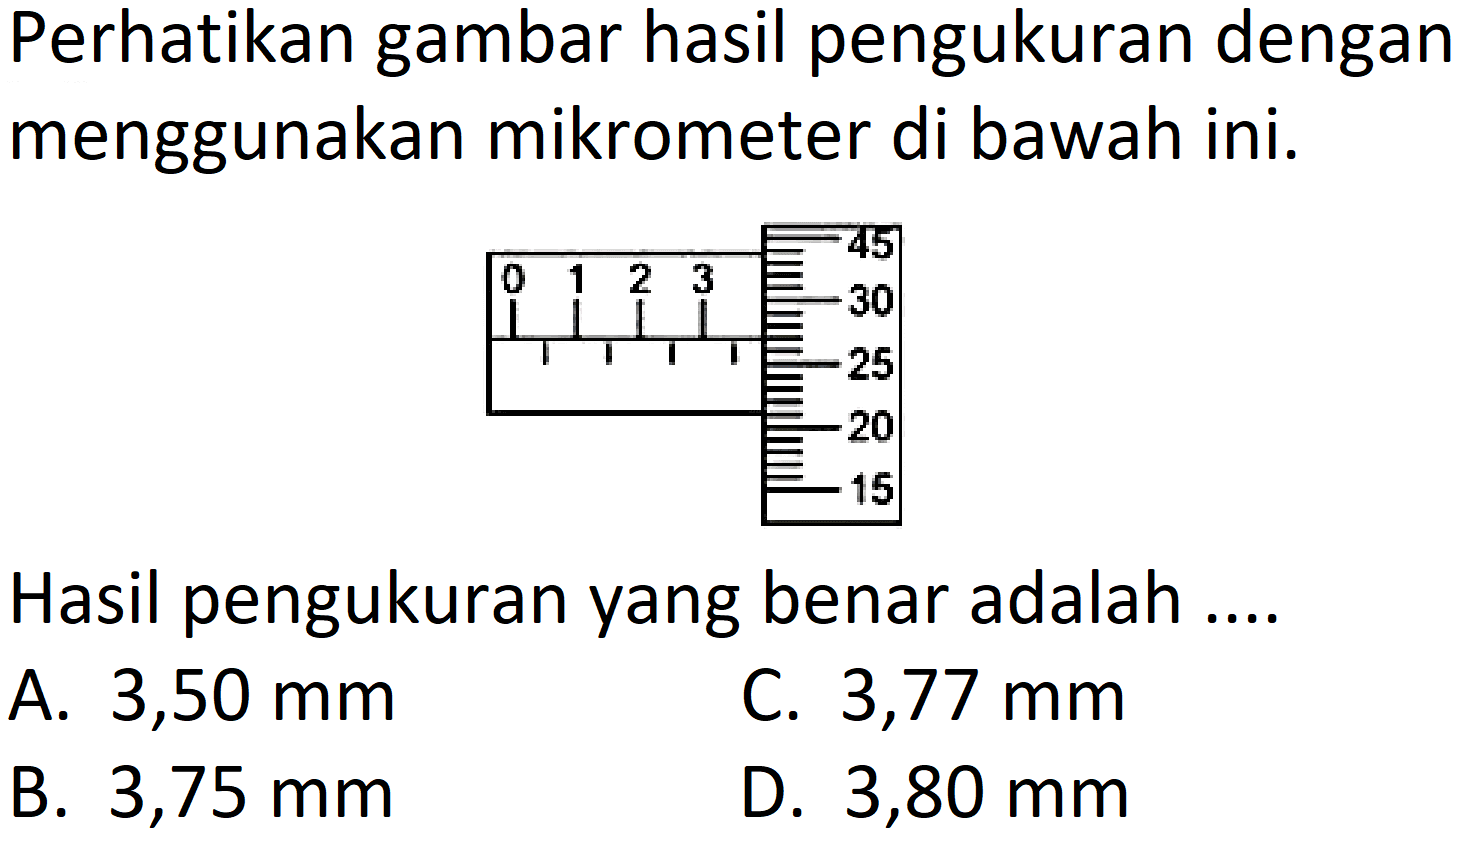 Perhatikan gambar hasil pengukuran dengan menggunakan mikrometer di bawah ini.
Hasil pengukuran yang benar adalah ....
A.  3,50 mm 
C.  3,77 mm 
B.  3,75 mm 
D.  3,80 mm 